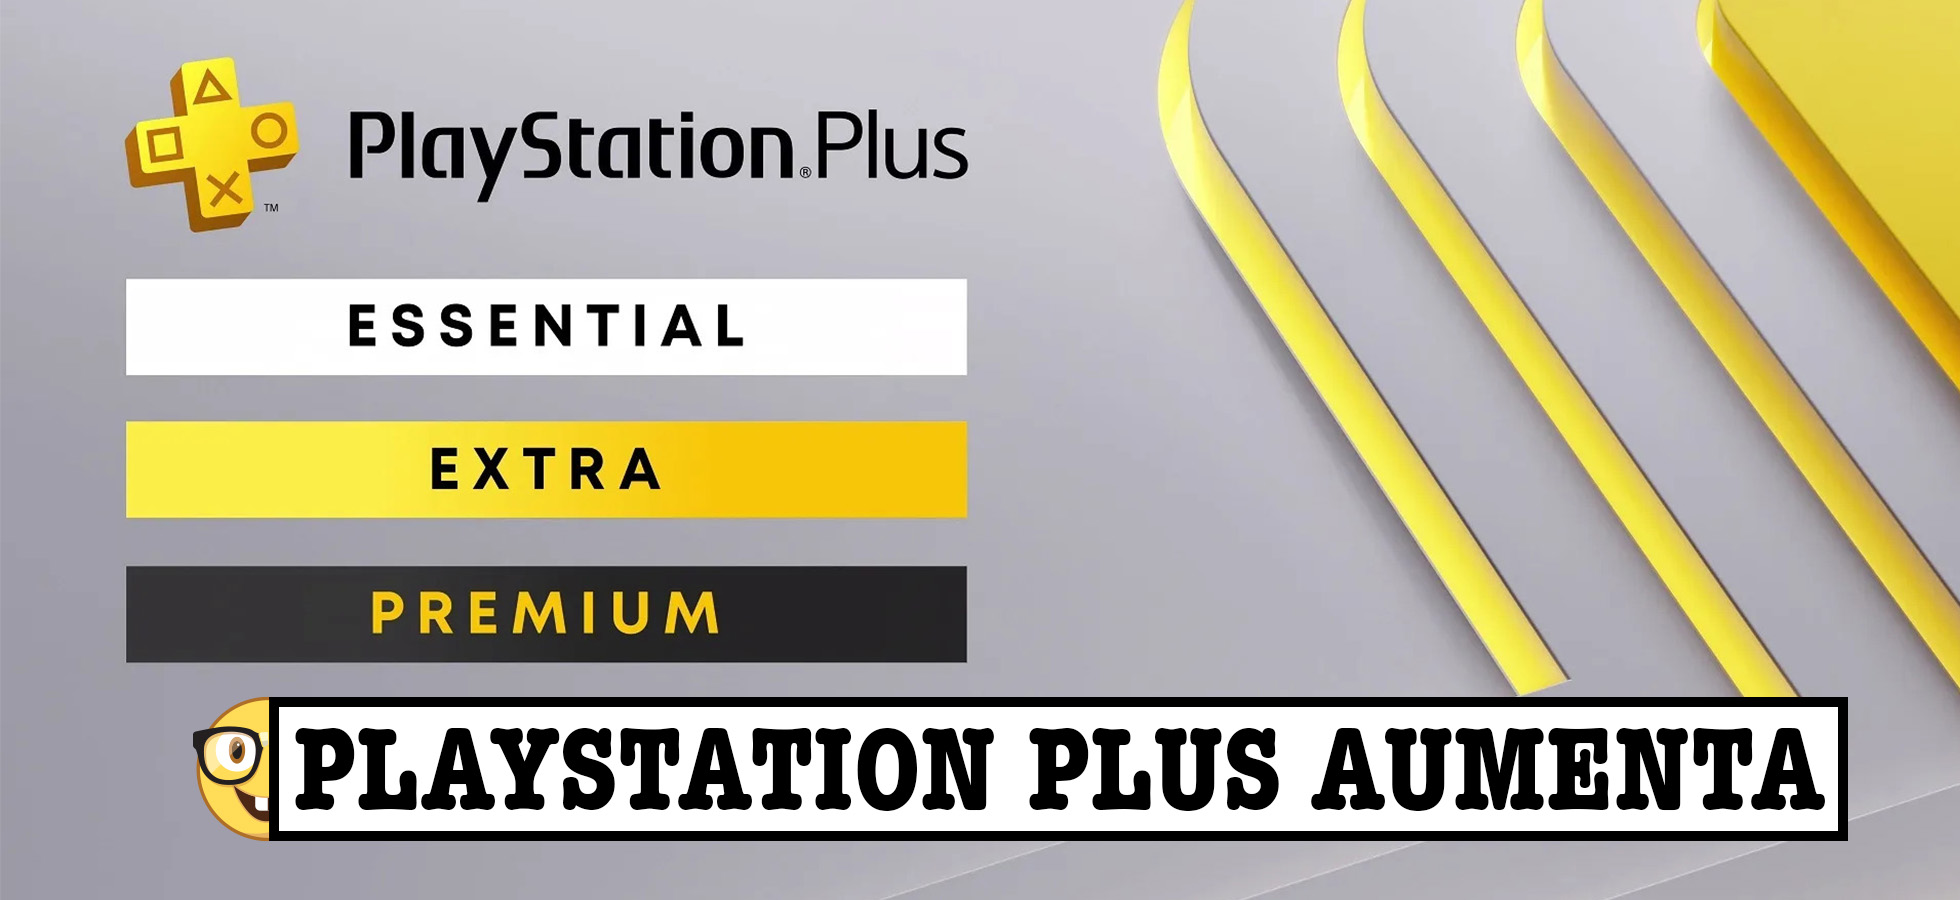 PlayStation Plus aumenta i prezzi: tutto quello che c'è da sapere - Affari  da Nerd